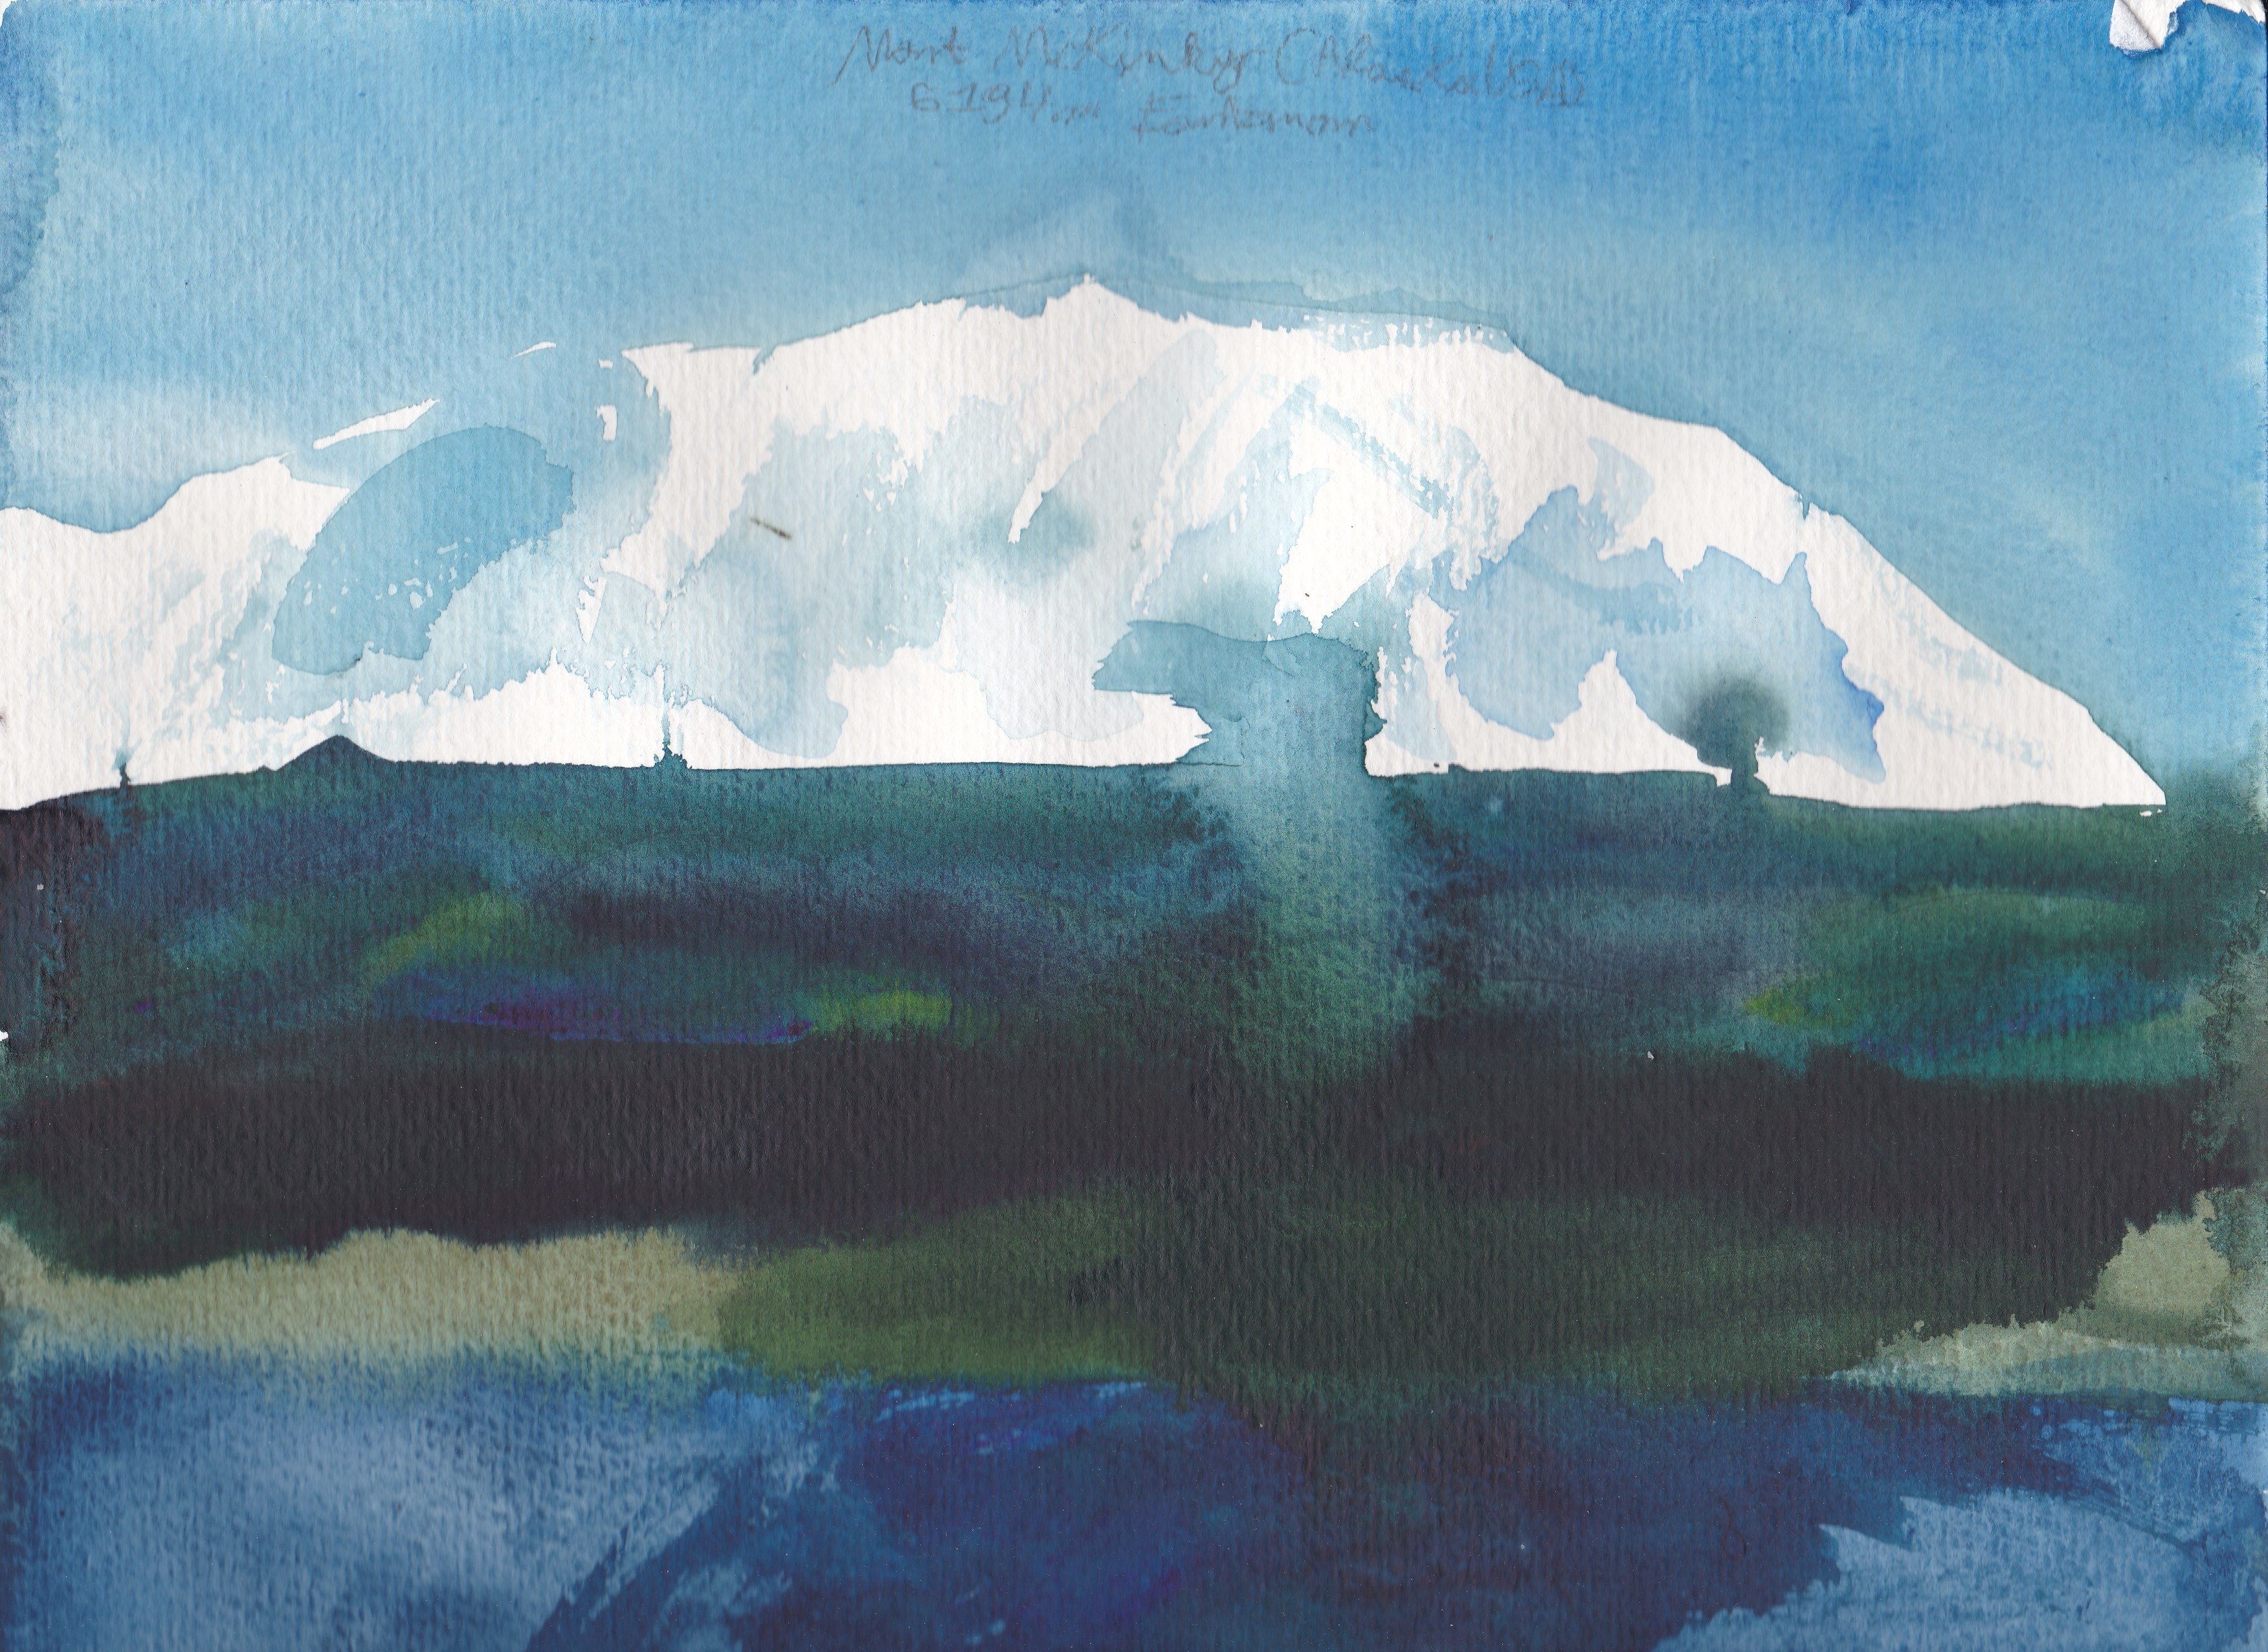 Le Mont McKinley, point culminant de l'Amérique du Nord à 6194m d'altitude, et ses gros glaciers puis forets et lacs d'Alaska.